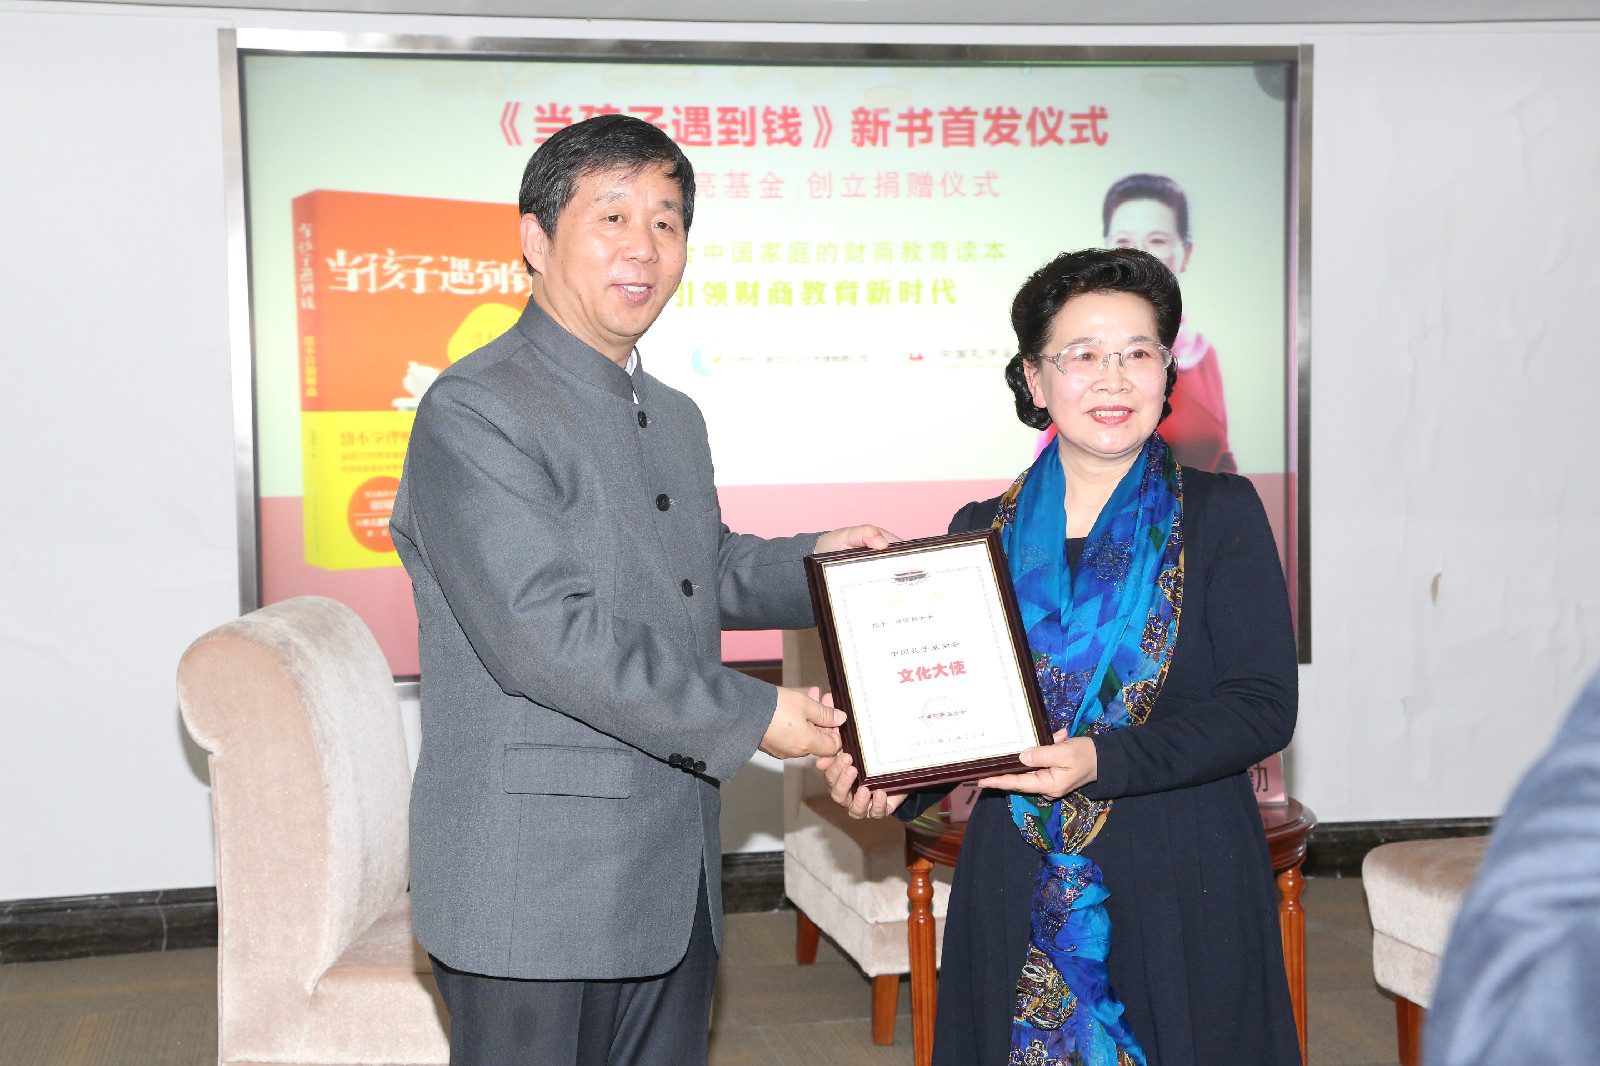 牛金濤副理事長為徐國靜頒發“聘書“。